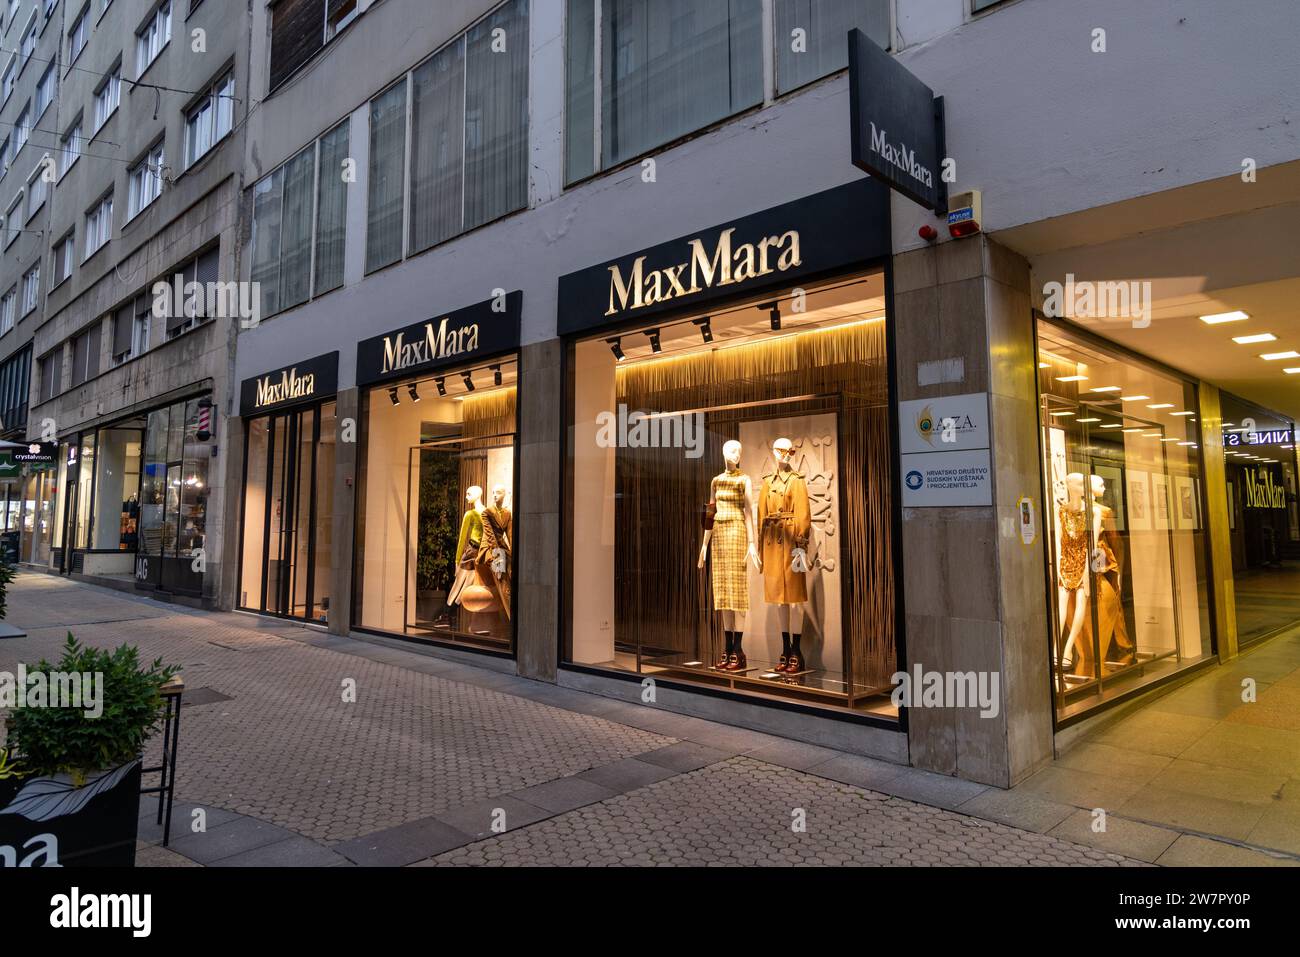 Façade du magasin MaxMara avec fenêtres éclairées avec mannequins Banque D'Images